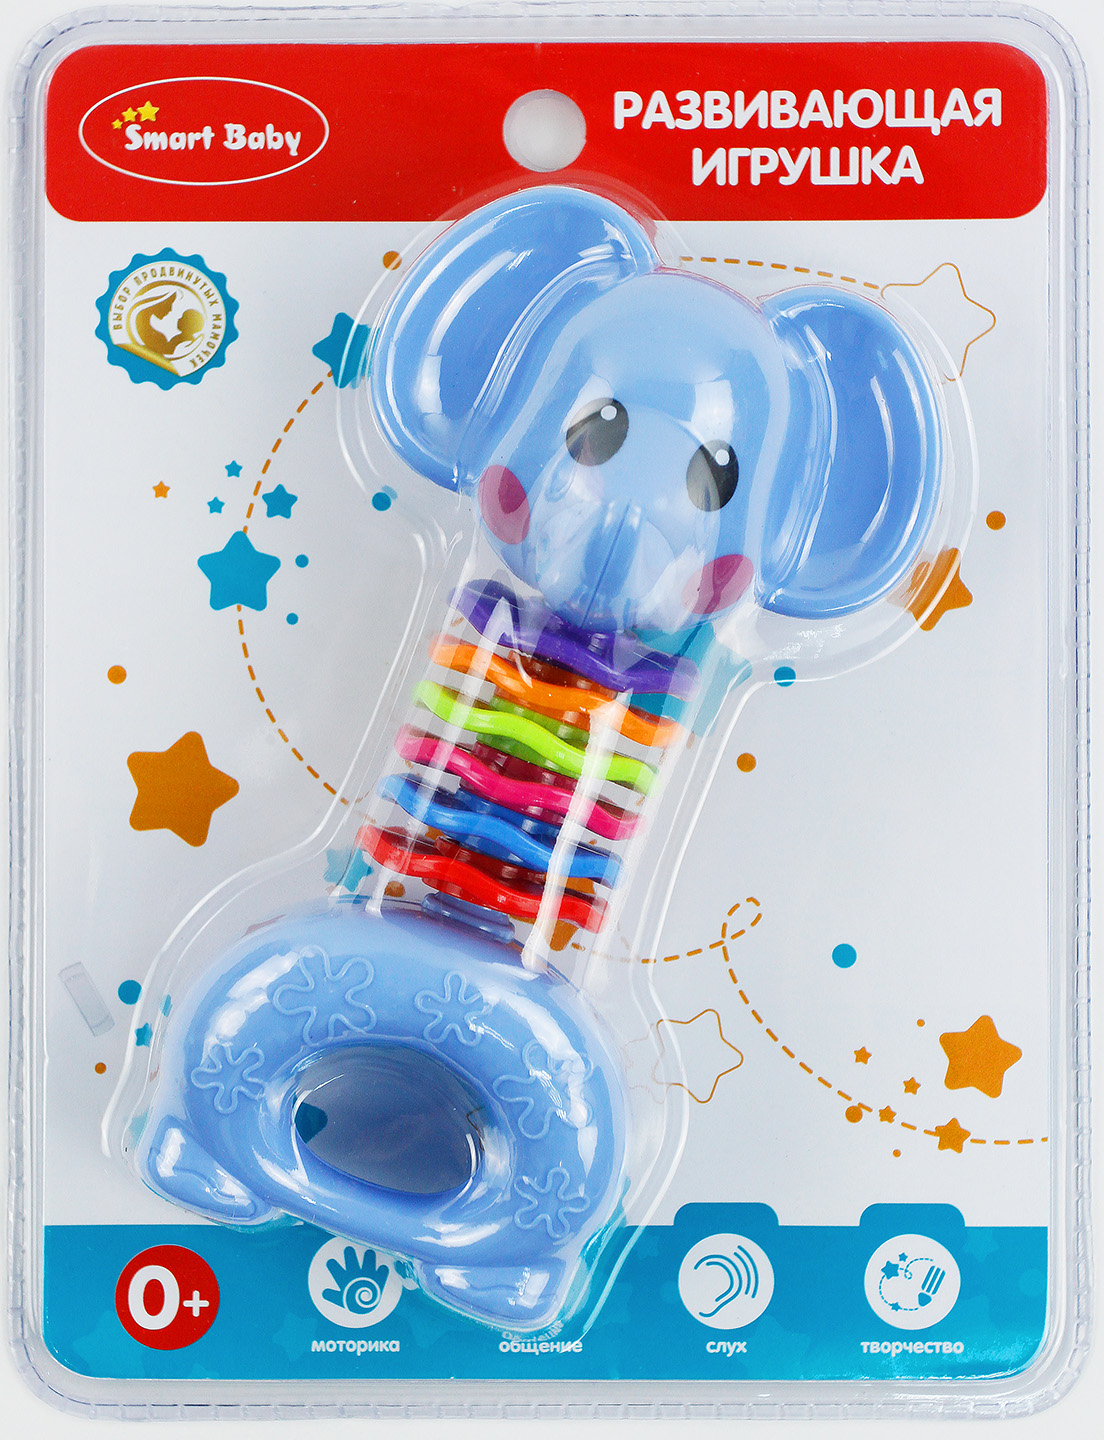 ТМ "Smart Baby" Развивающая игрушка "Слон", на блистере 21,5х16,5х4 см JB0333387